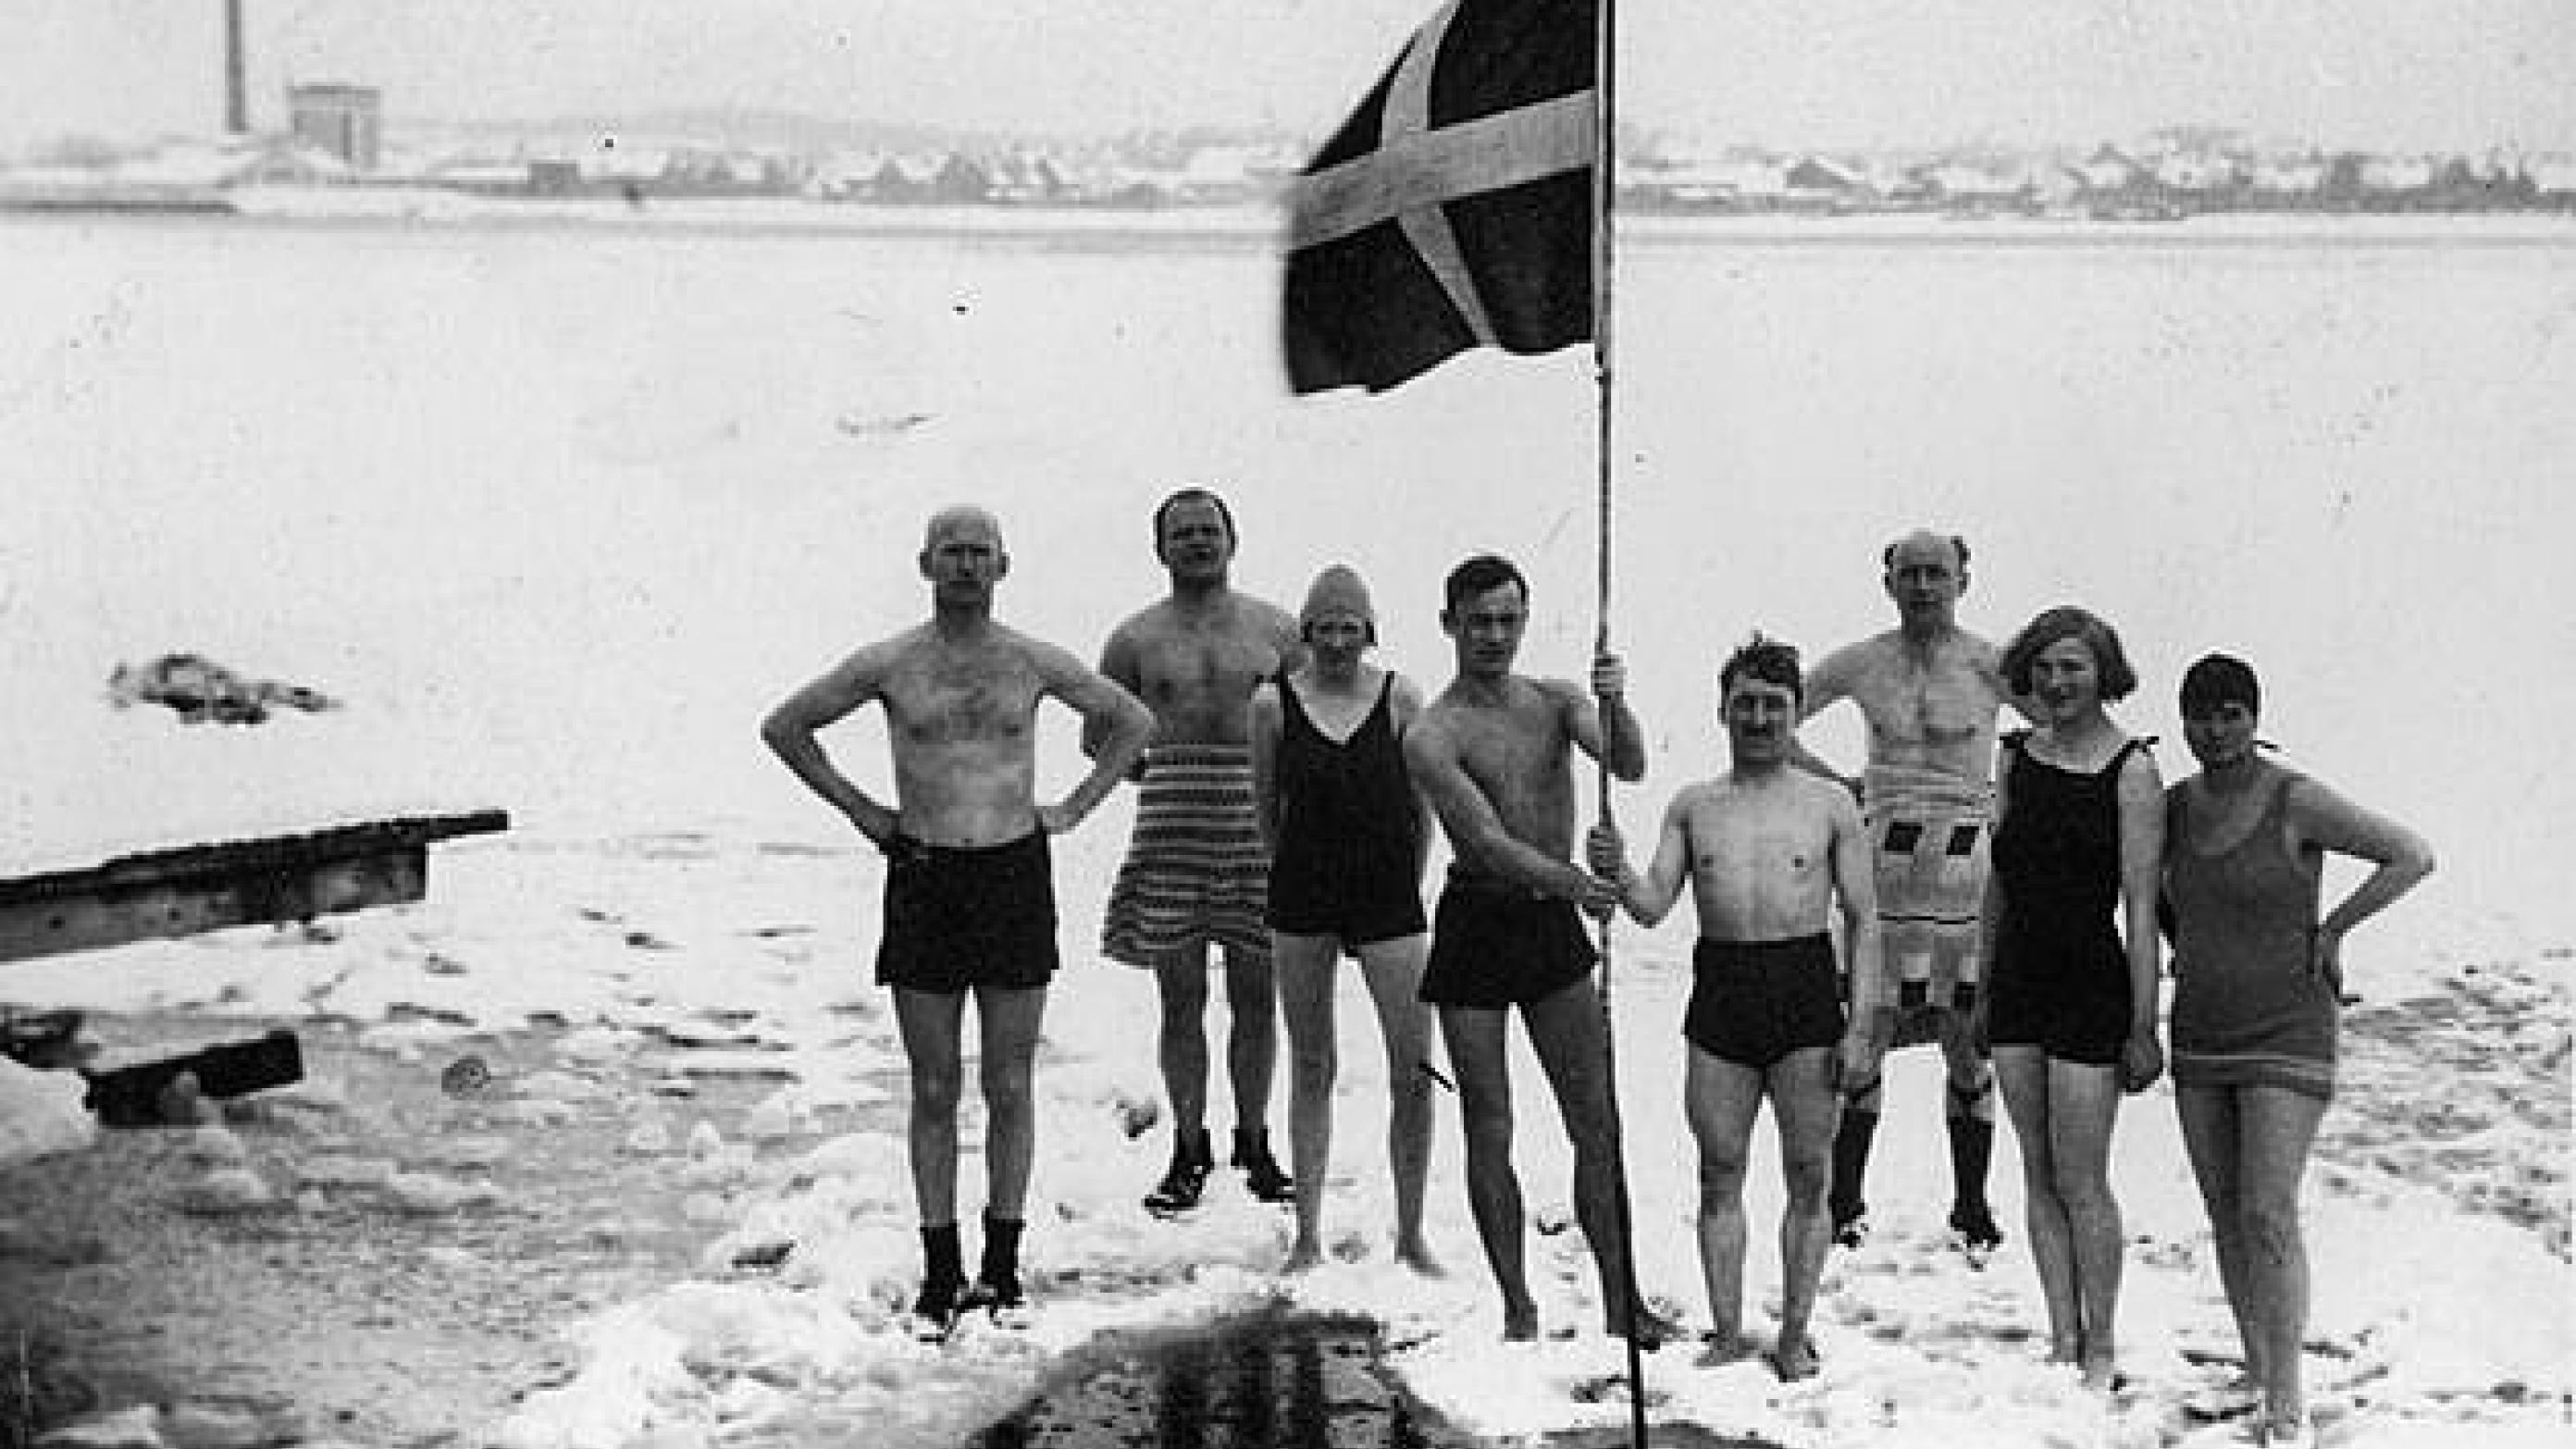 Medlemmer af vinterbadeforeningen Isbjørnen, Aalborg i 1920'erne. Foto: Aalborg Stadsarkiv.